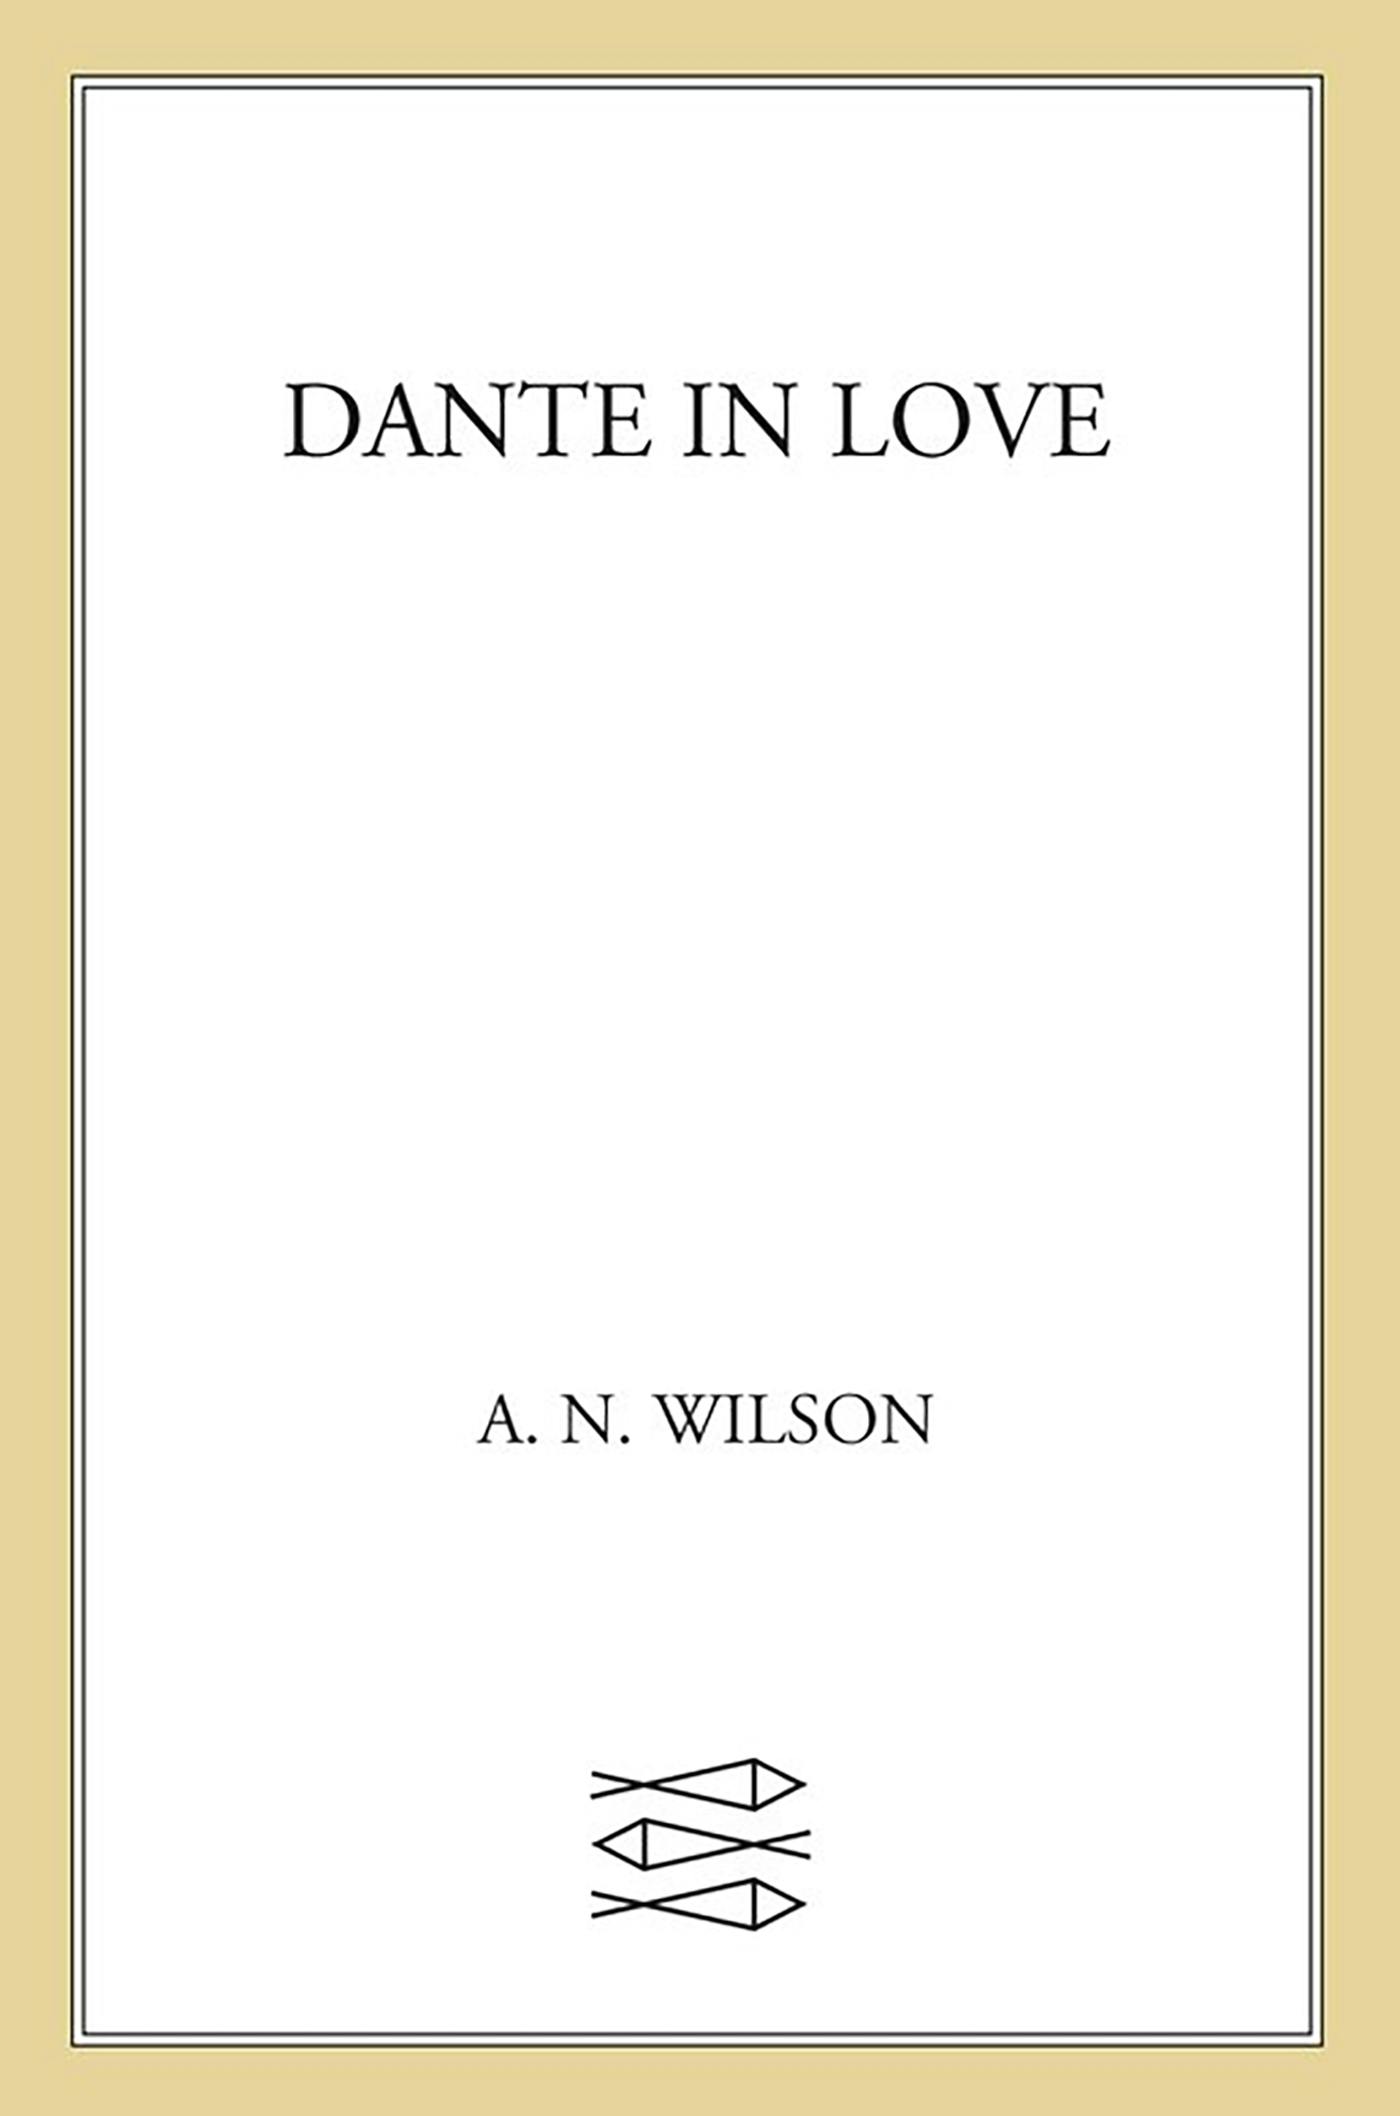 Dante in Love photo